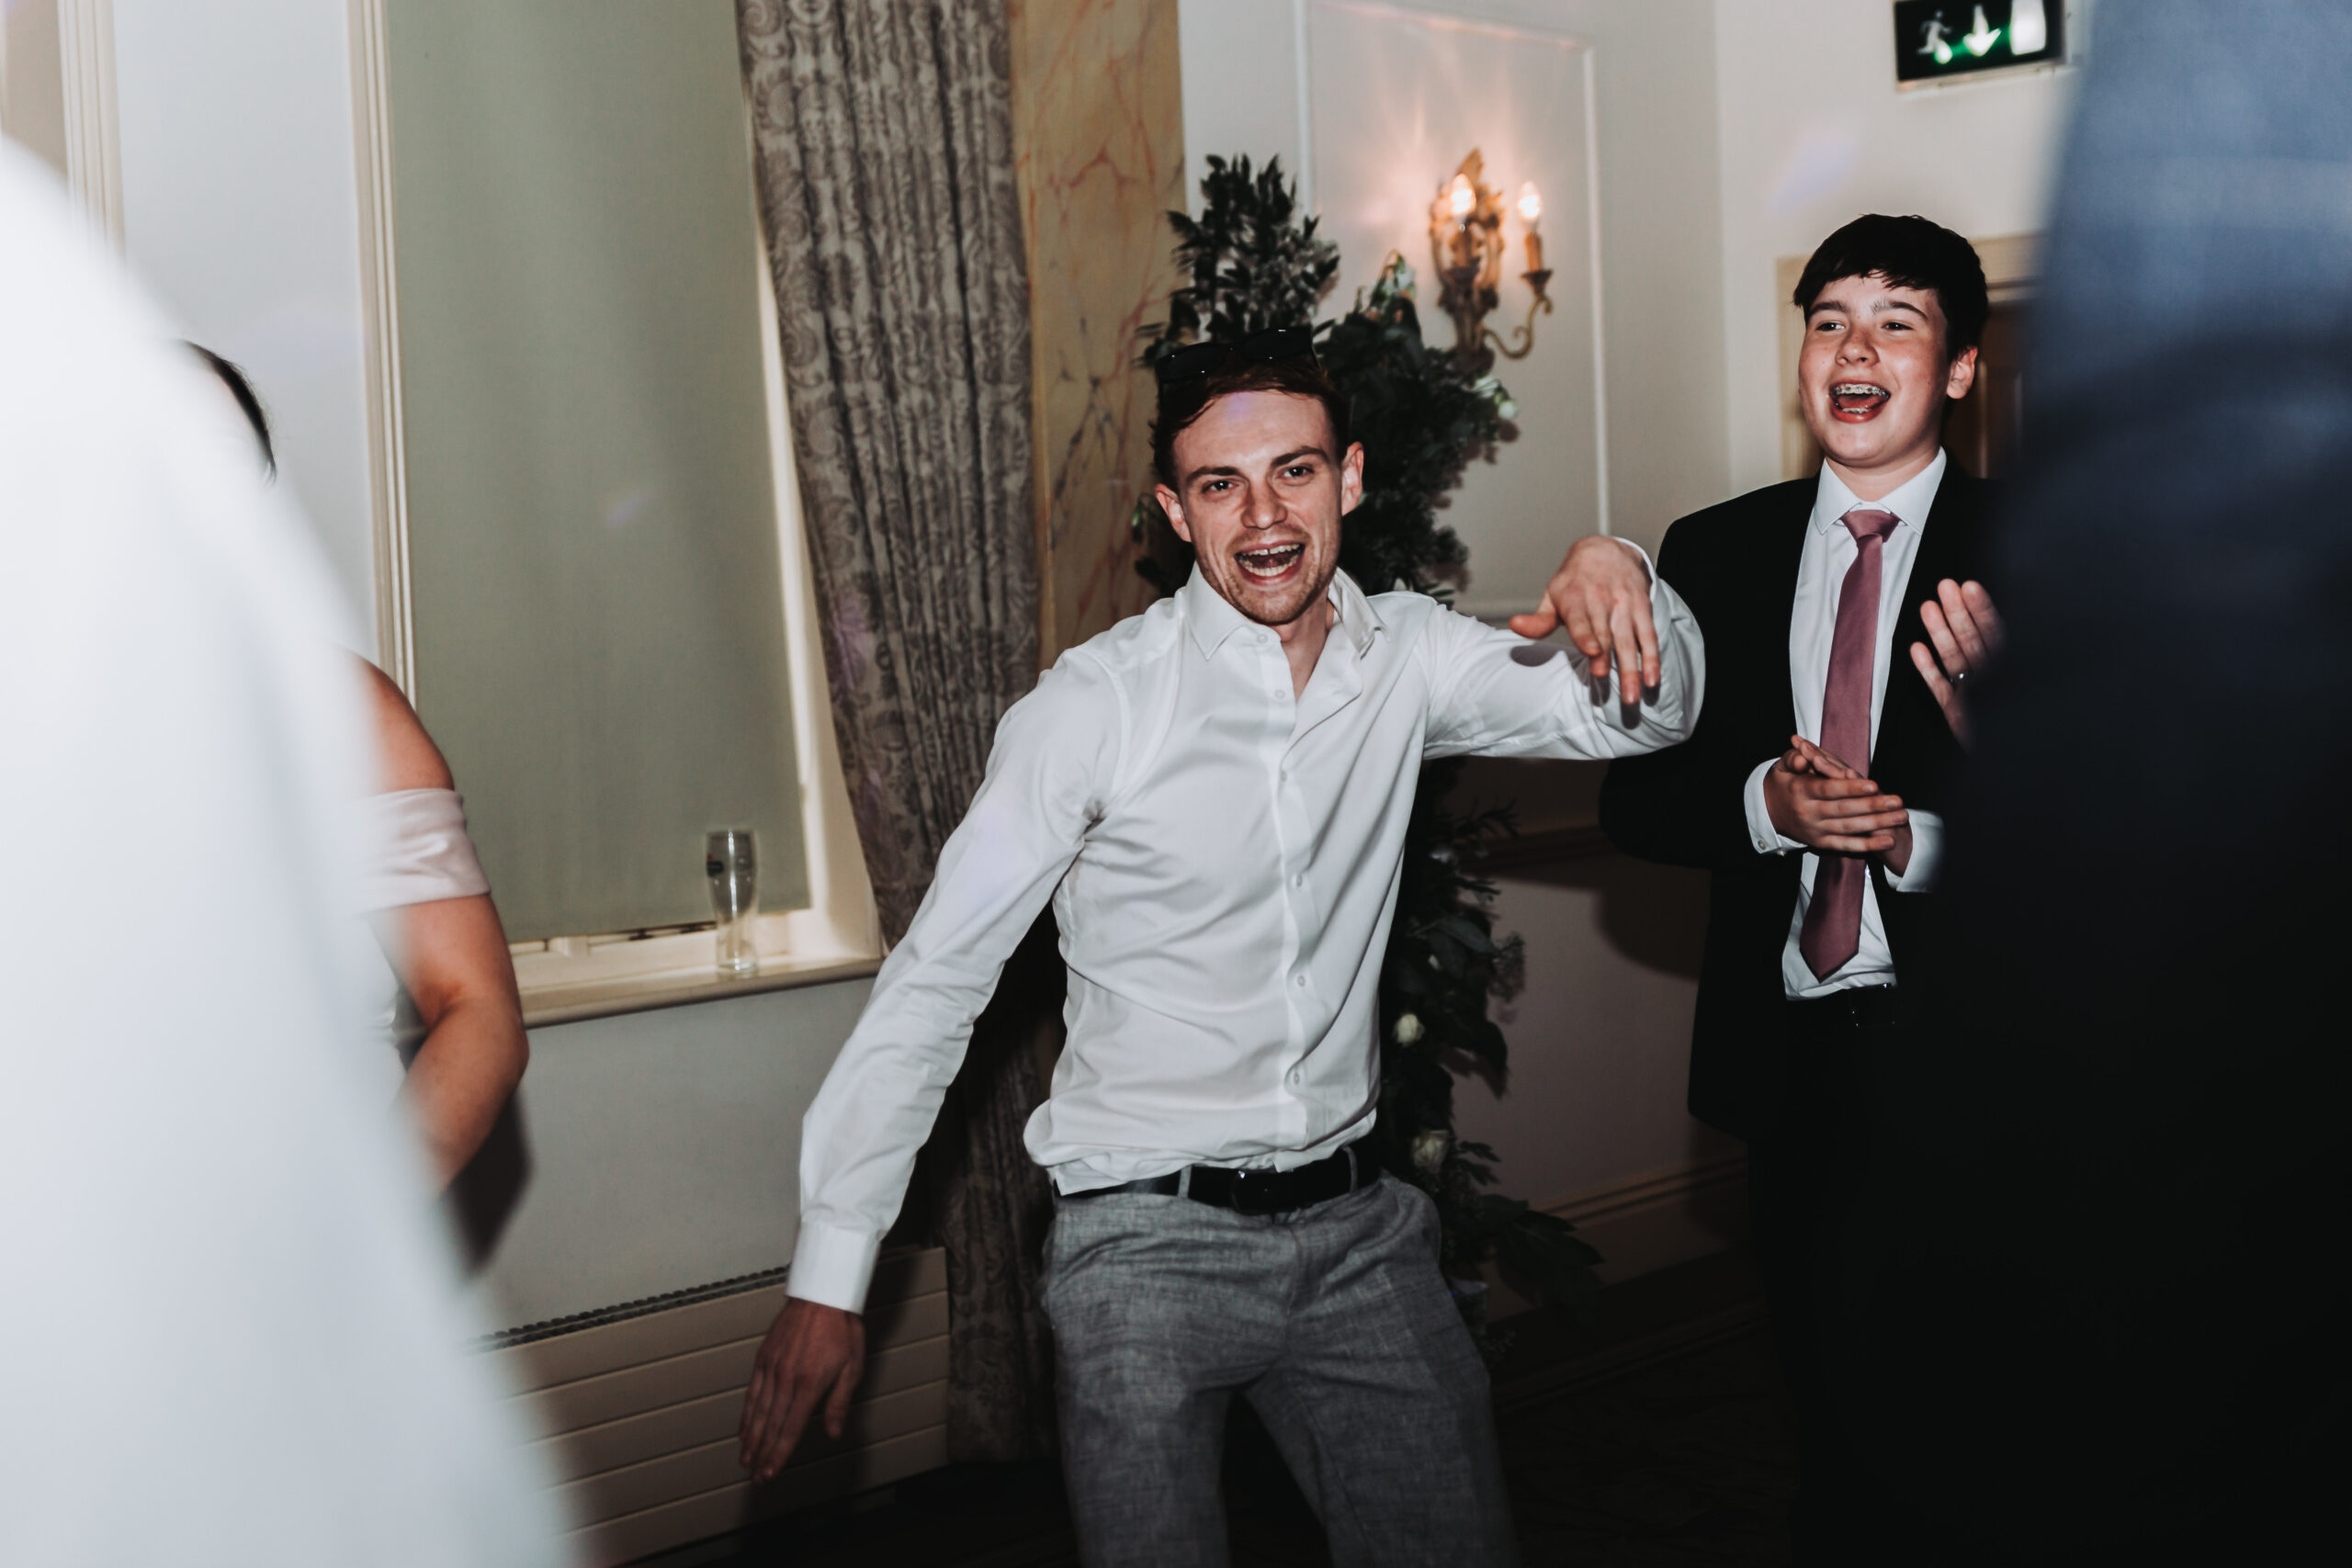 man dancing at a wedding